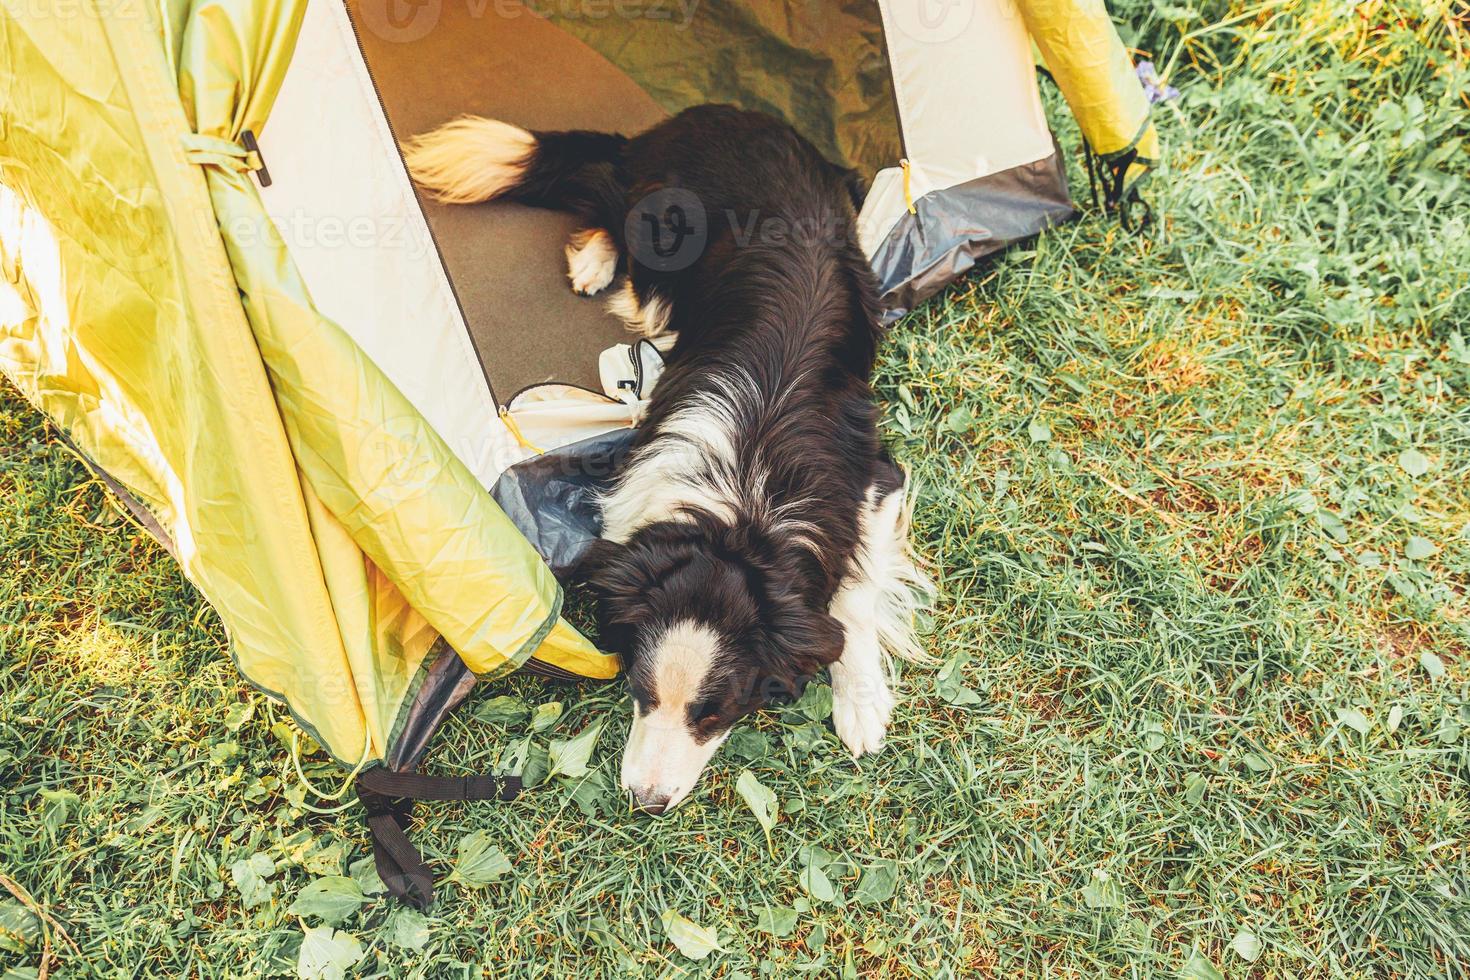 buitenshuis portret van schattig grappig puppy hond grens collie aan het liegen naar beneden binnen in camping tent. huisdier reizen avontuur met hond metgezel. voogd en camping bescherming. reis toerisme concept foto